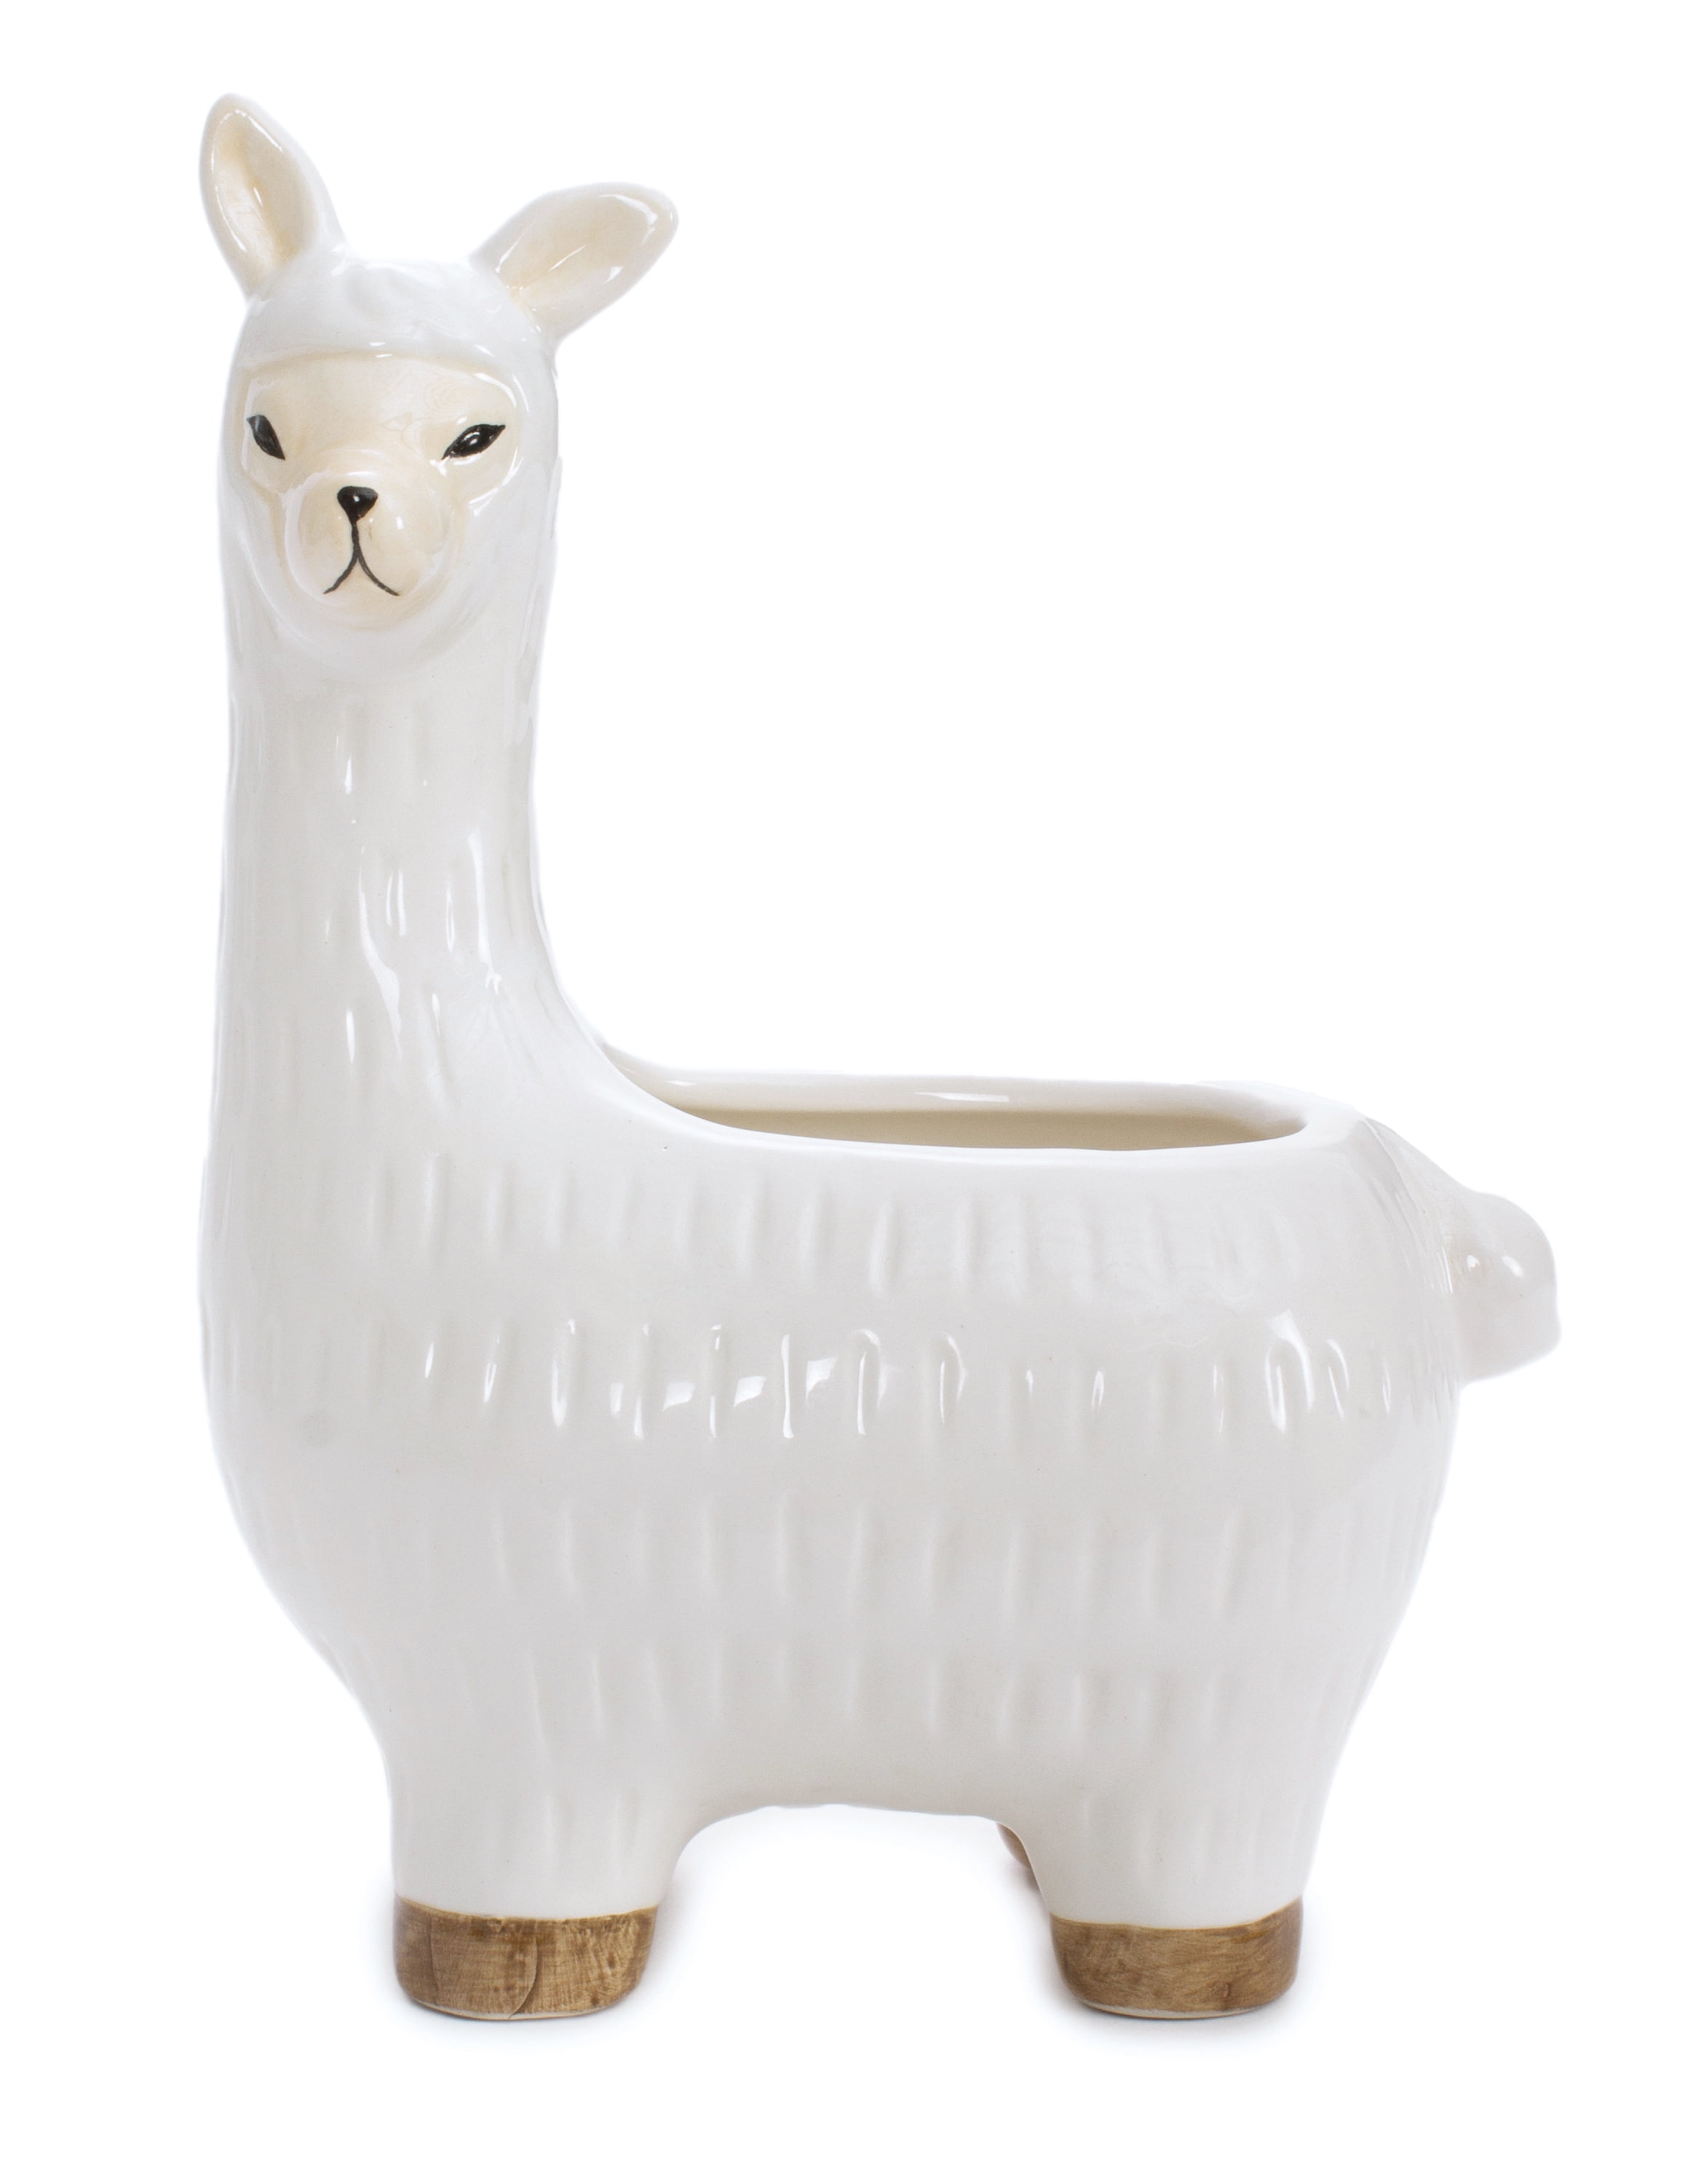 Leisure Arts White Solid Ceramic Llama Vase, 1 Each